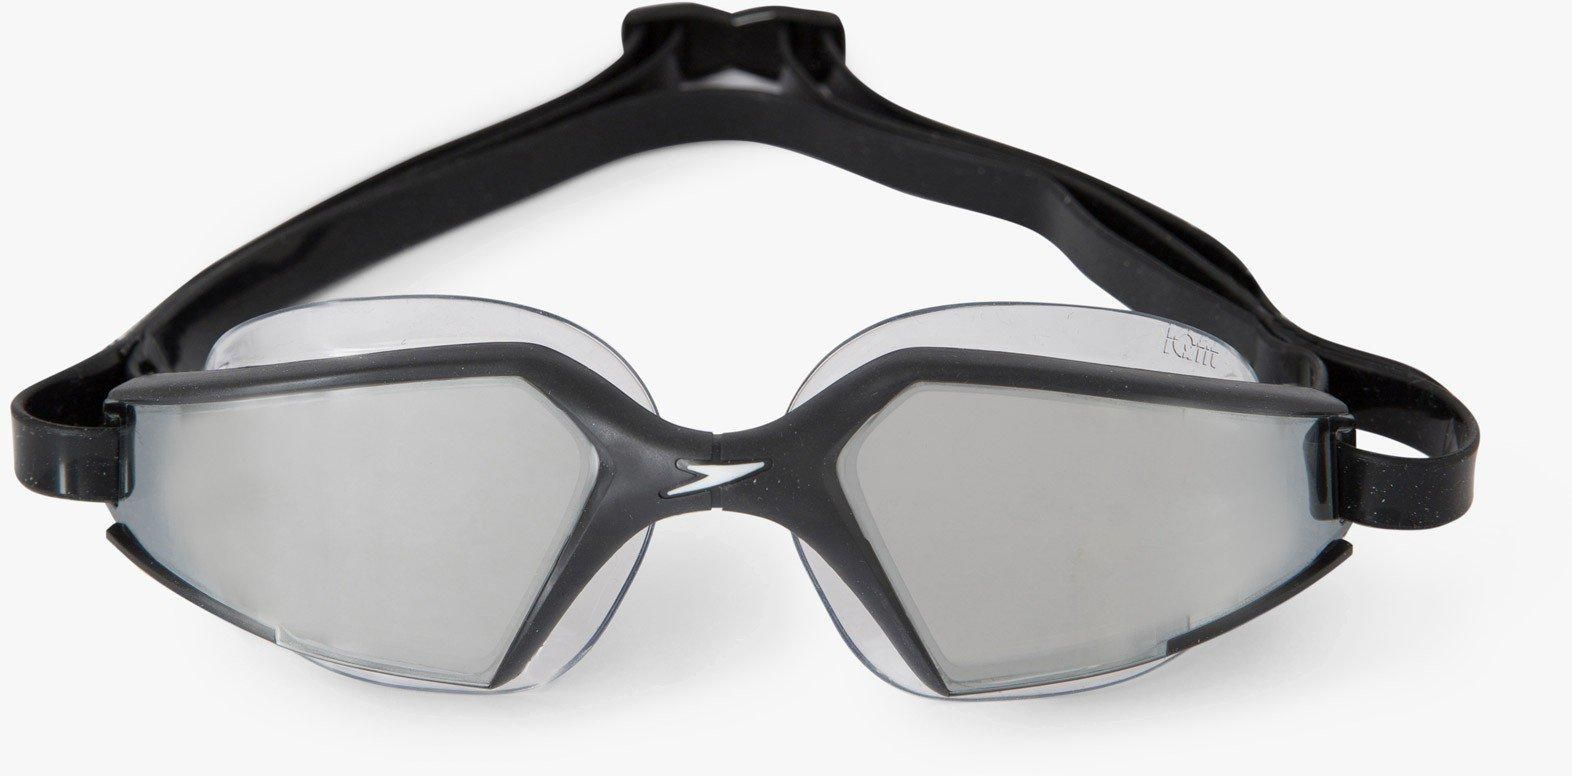 Men's Aquapulse Max Mirror 2 Goggles